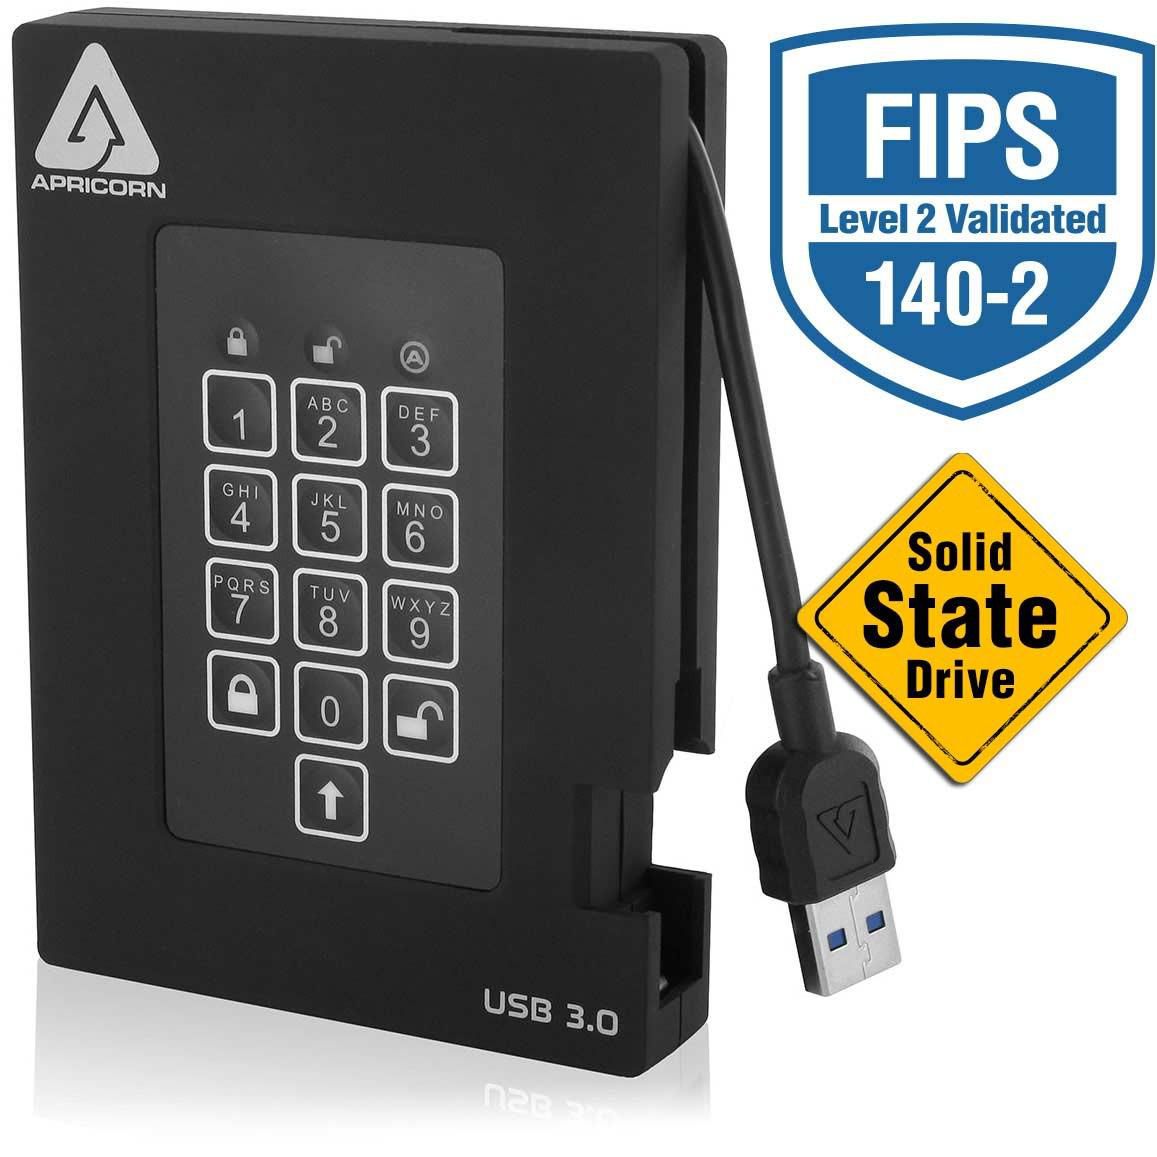 Apricorn A25-3PL256-S1000F 1TB Aegis Fortress SSD USB 3.0 